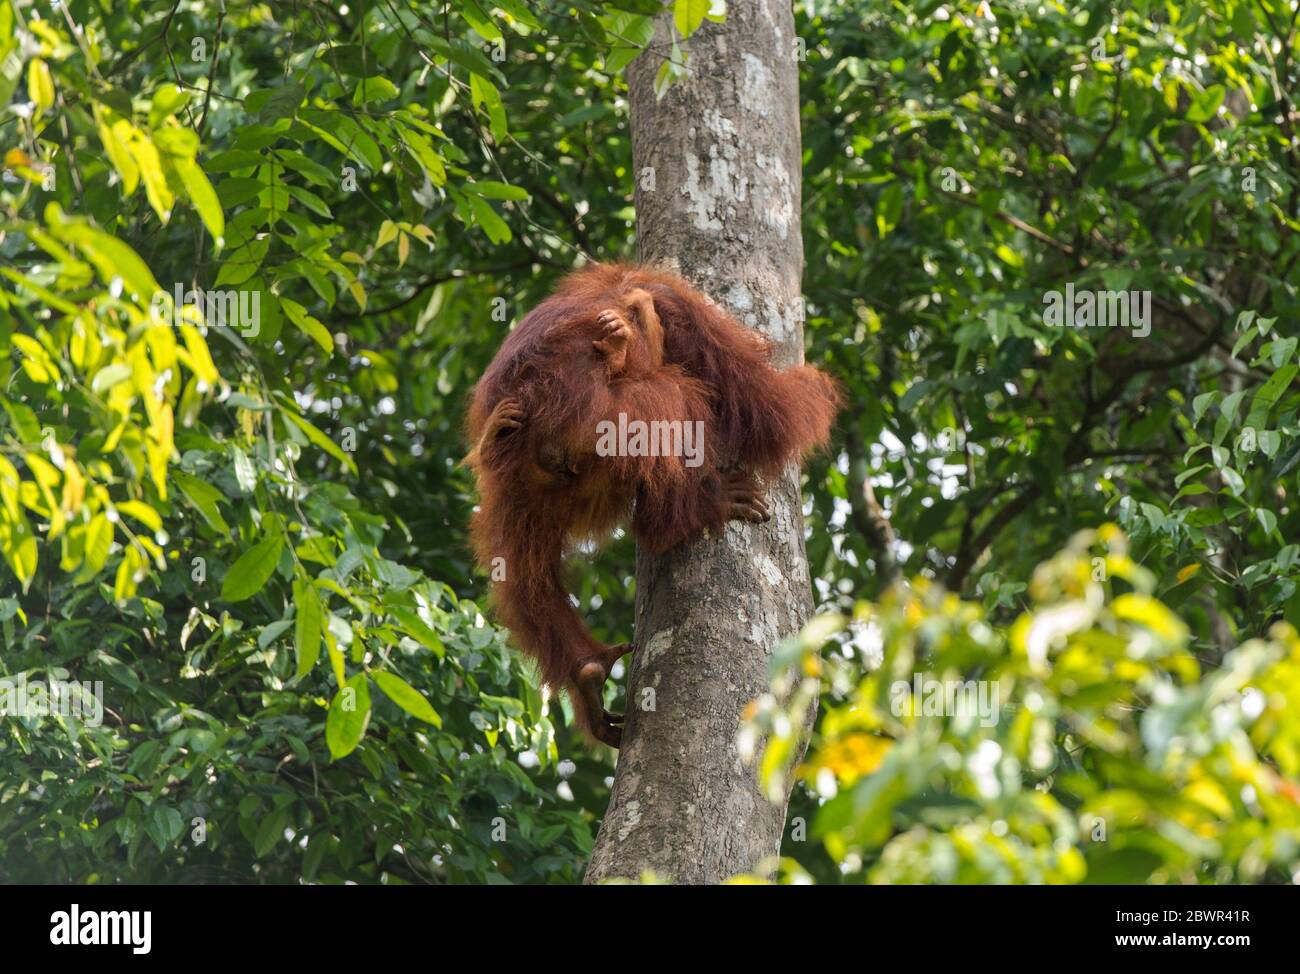 Orang-Utan madre con el bebé trepar un árbol, Centro de vida Silvestre, Reserva Natural de Semenggoh, Siburan, Sarawak. Foto de stock